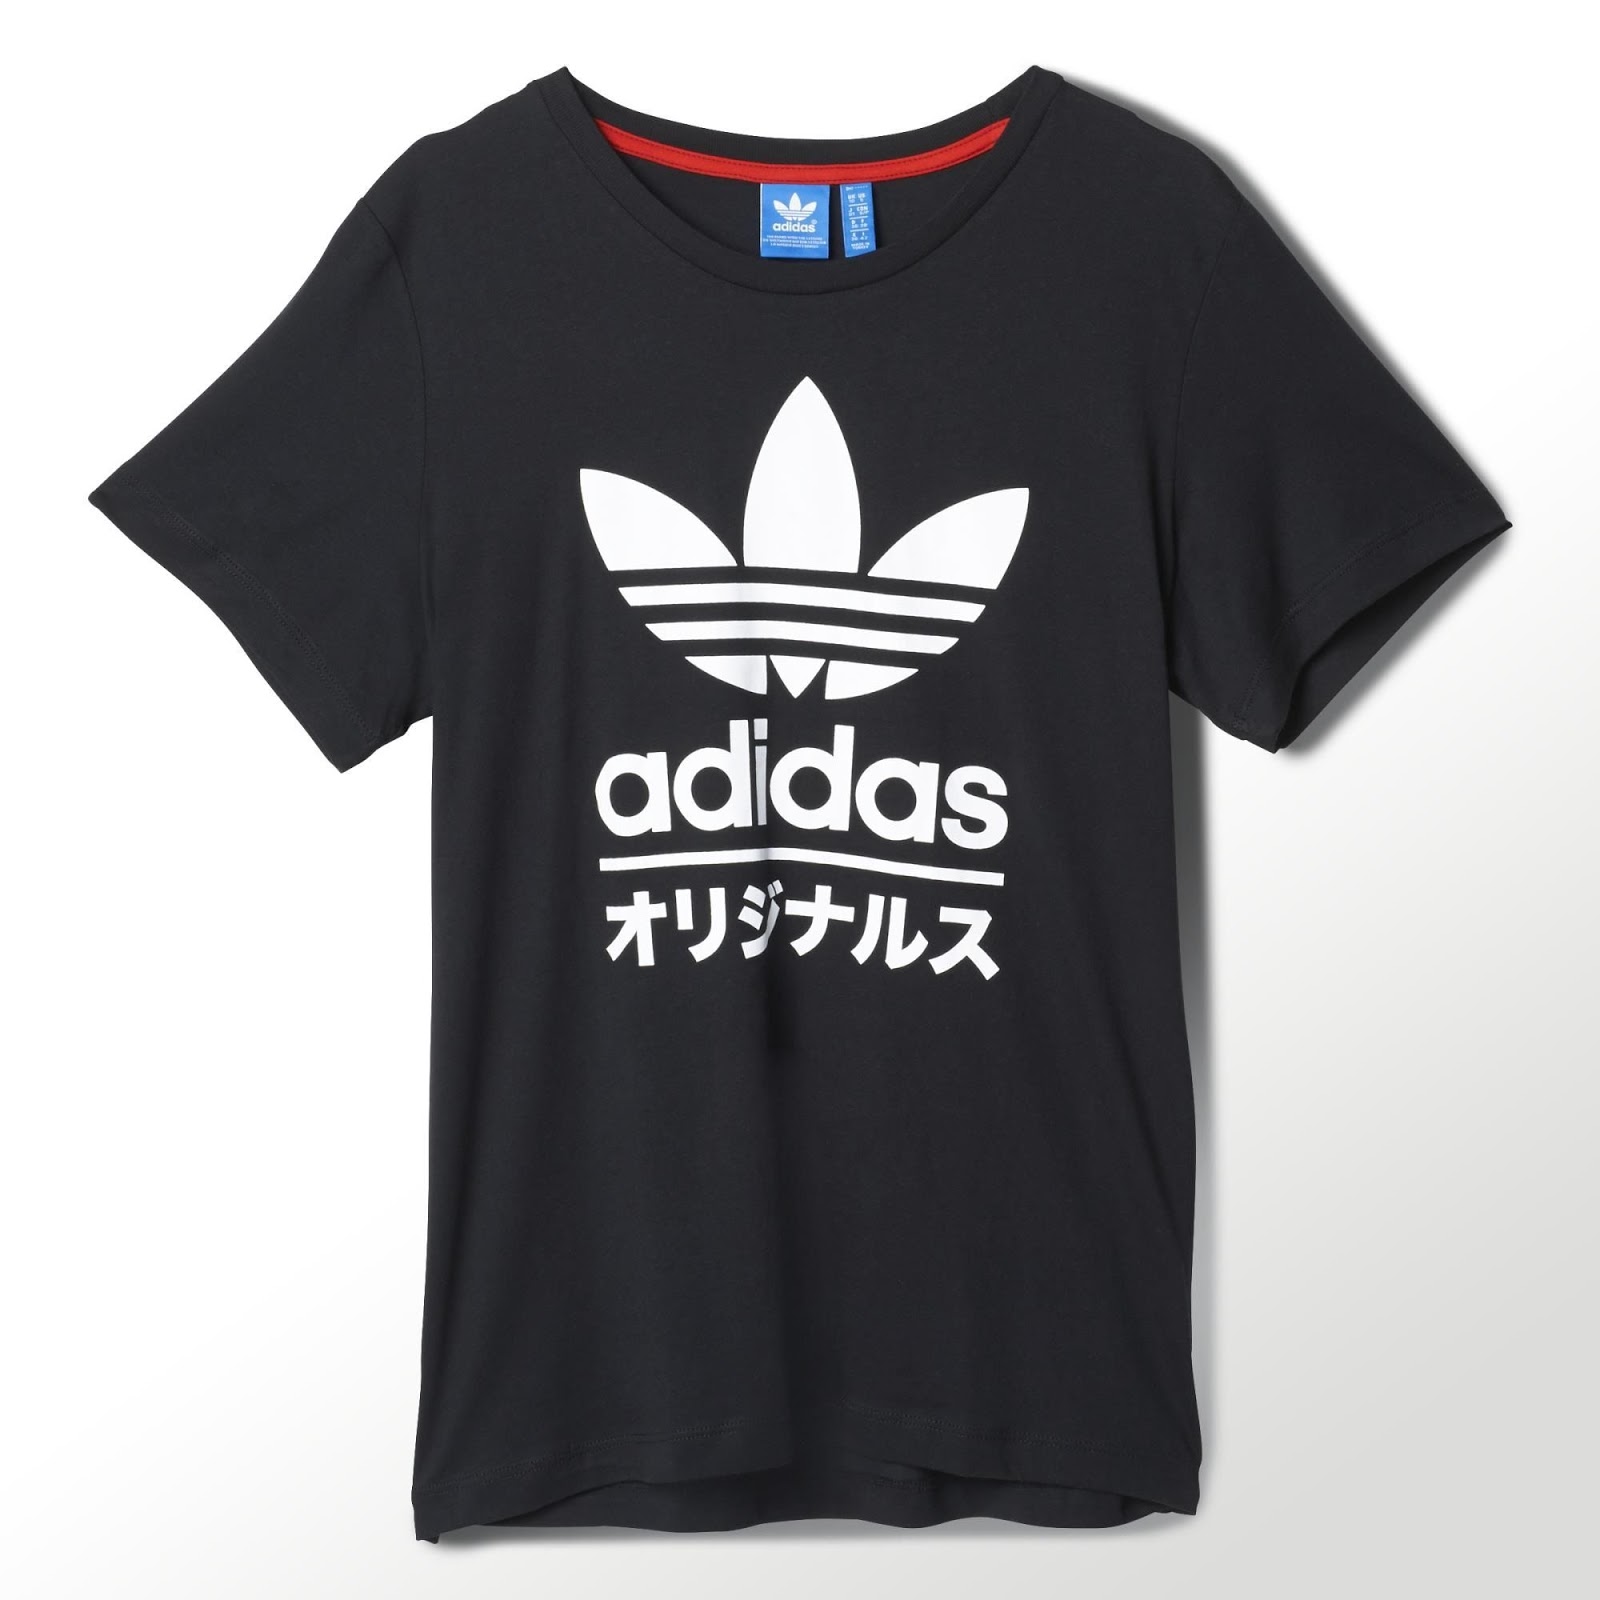 Adidas japan. Адидас Japan. Футболка адидас Japan. Adidas с иероглифами. Адидас японский стиль.